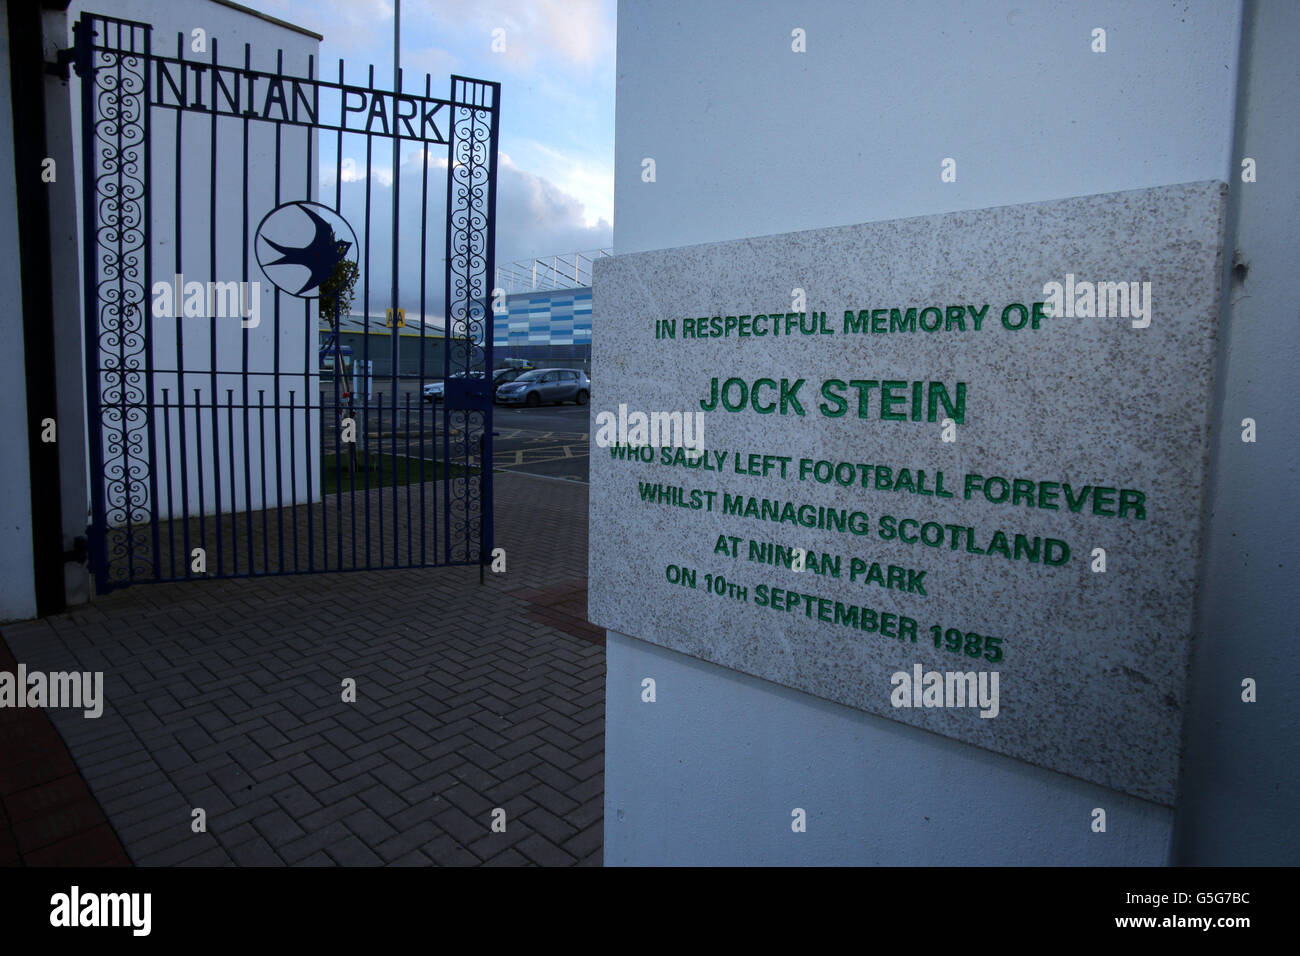 Die alten Ninian Park Gates mit der Gedenktafel an den ehemaligen Schottland-Manager Jock Stein vor dem FIFA-WM-Qualifikationsspiel 2014 im Cardiff City Stadium, Cardiff. Stockfoto